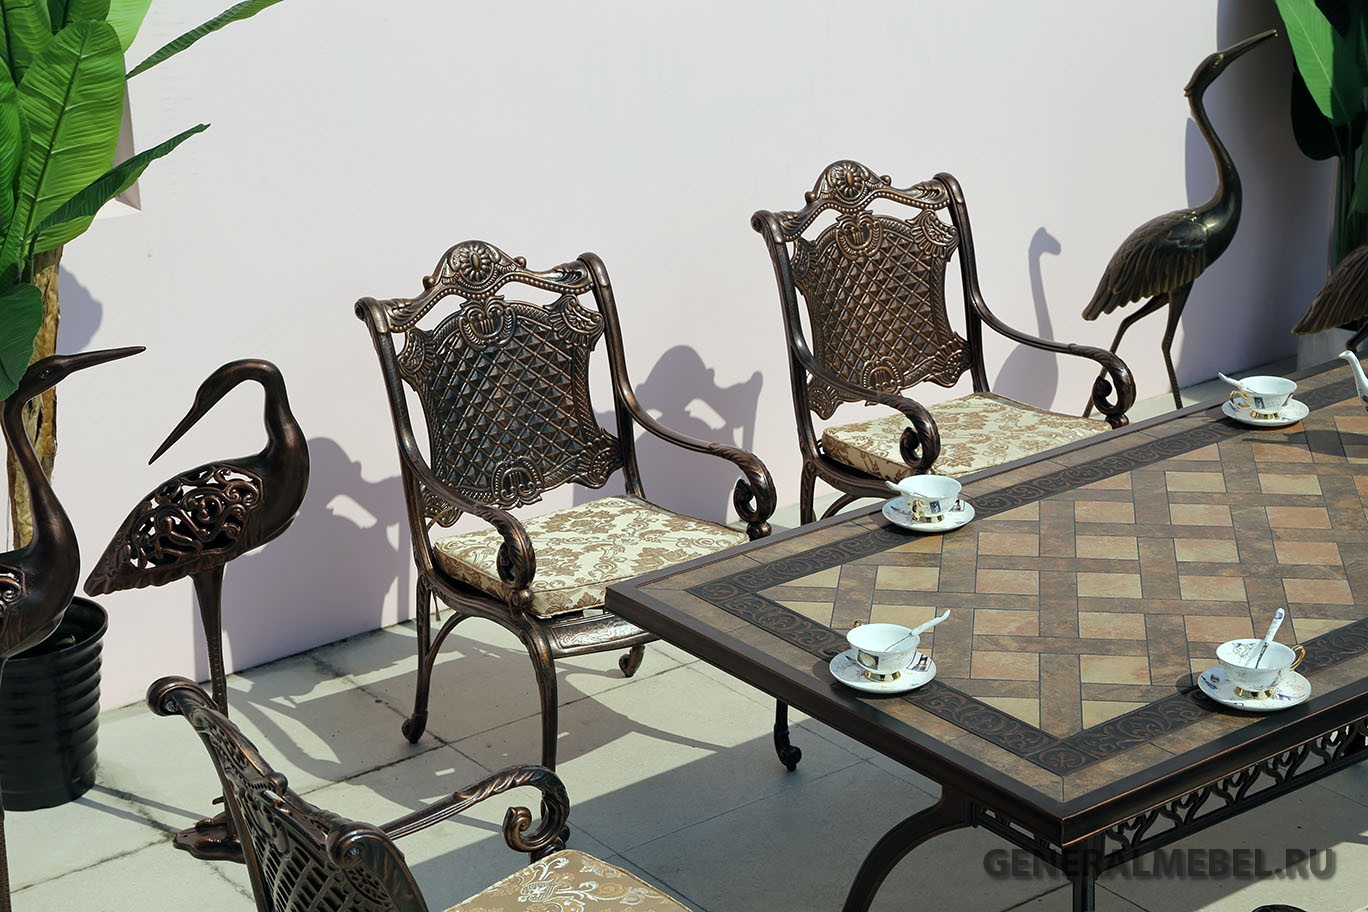 Элитная мебель из металла, обеденный комплект мебели из литого алюминия для столовой, Стол с мозаикой обеденный, Мебель из металла для кафе и ресторанов